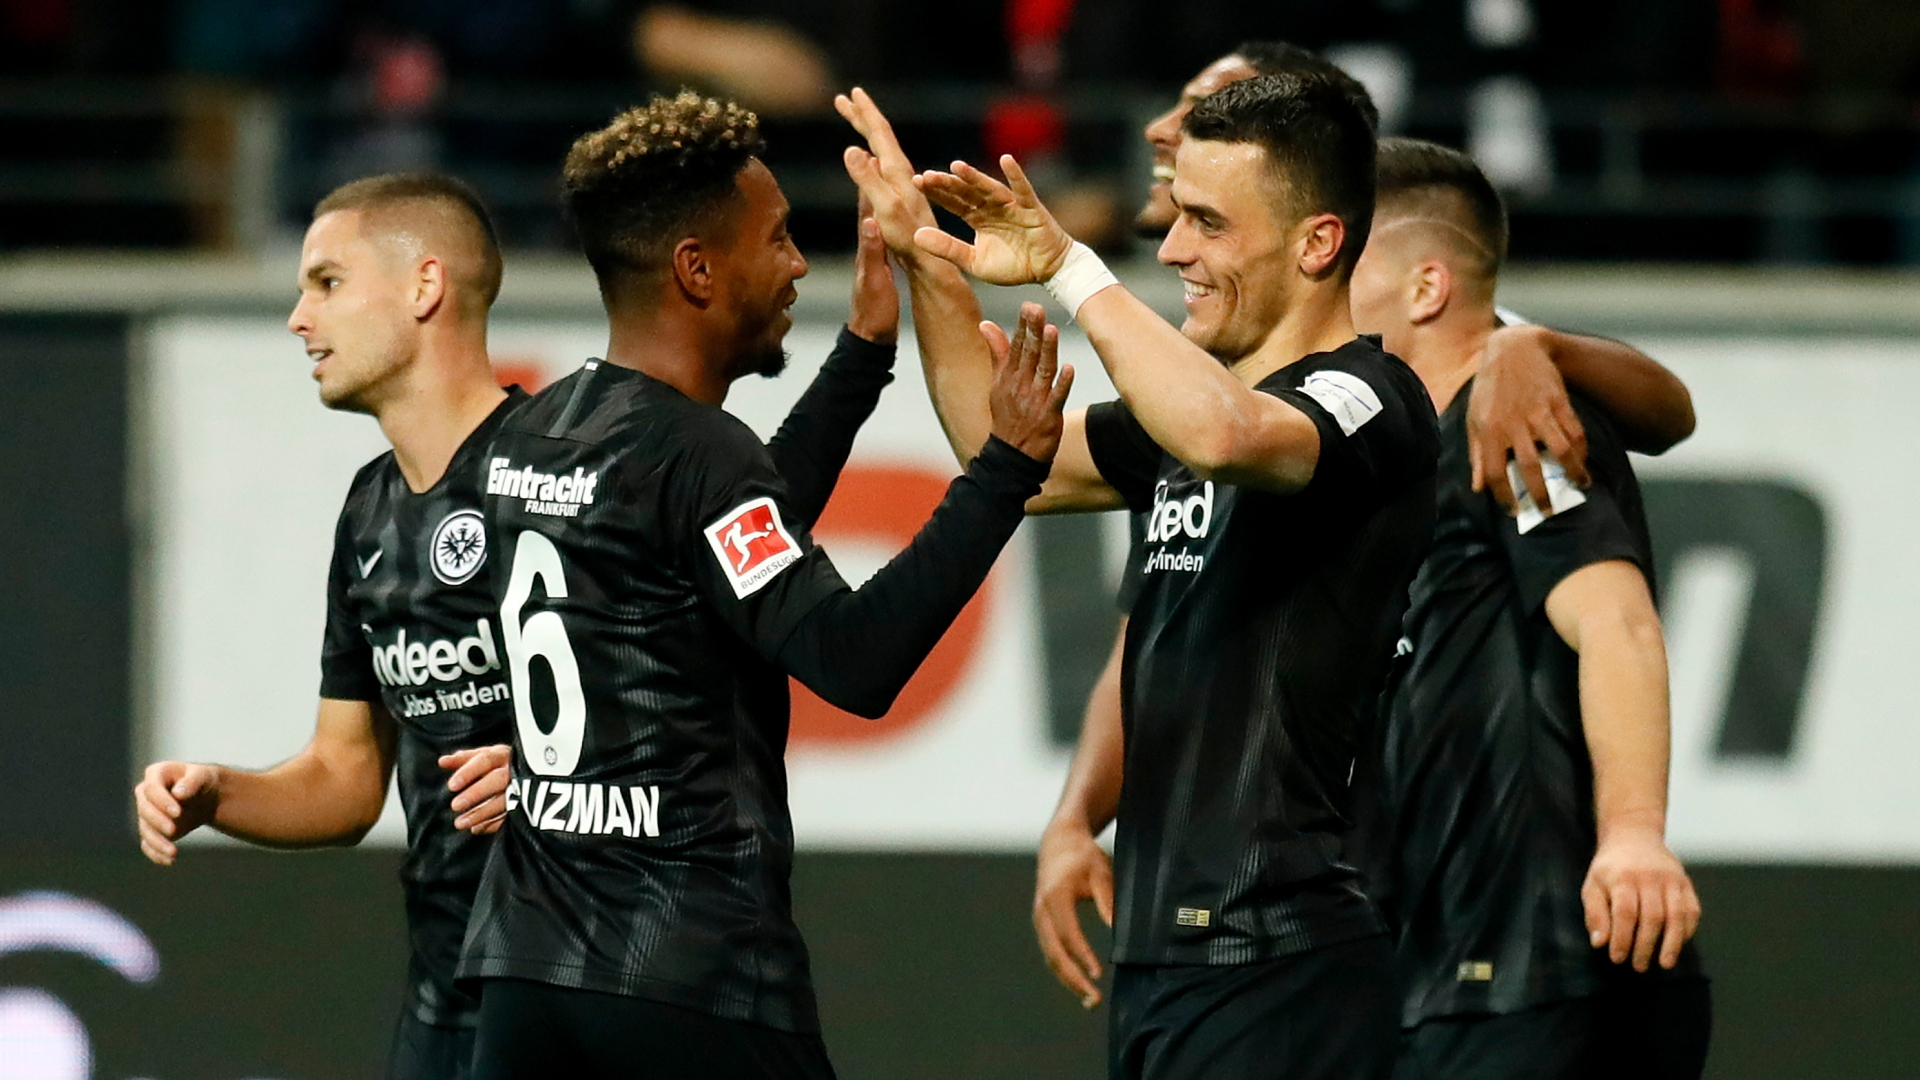 Spieler von Eintracht Frankfurt feiern ein Tor gegen Fortuna Düsseldorf | Bildquelle: RONALD WITTEK/EPA-EFE/REX/Shutte